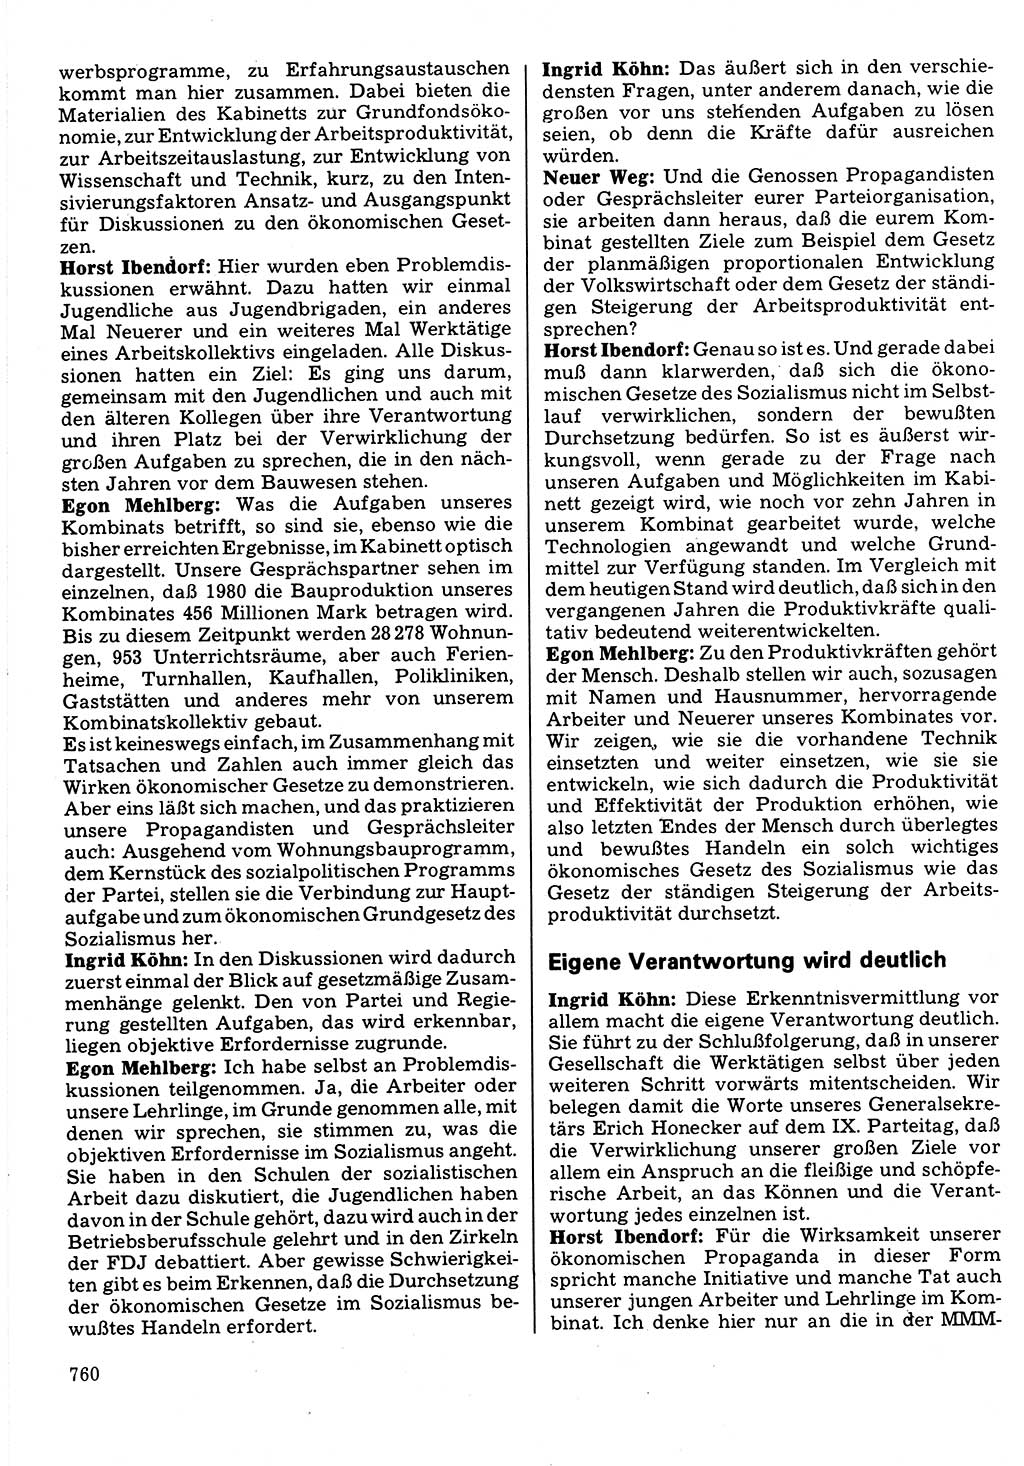 Neuer Weg (NW), Organ des Zentralkomitees (ZK) der SED (Sozialistische Einheitspartei Deutschlands) für Fragen des Parteilebens, 32. Jahrgang [Deutsche Demokratische Republik (DDR)] 1977, Seite 760 (NW ZK SED DDR 1977, S. 760)